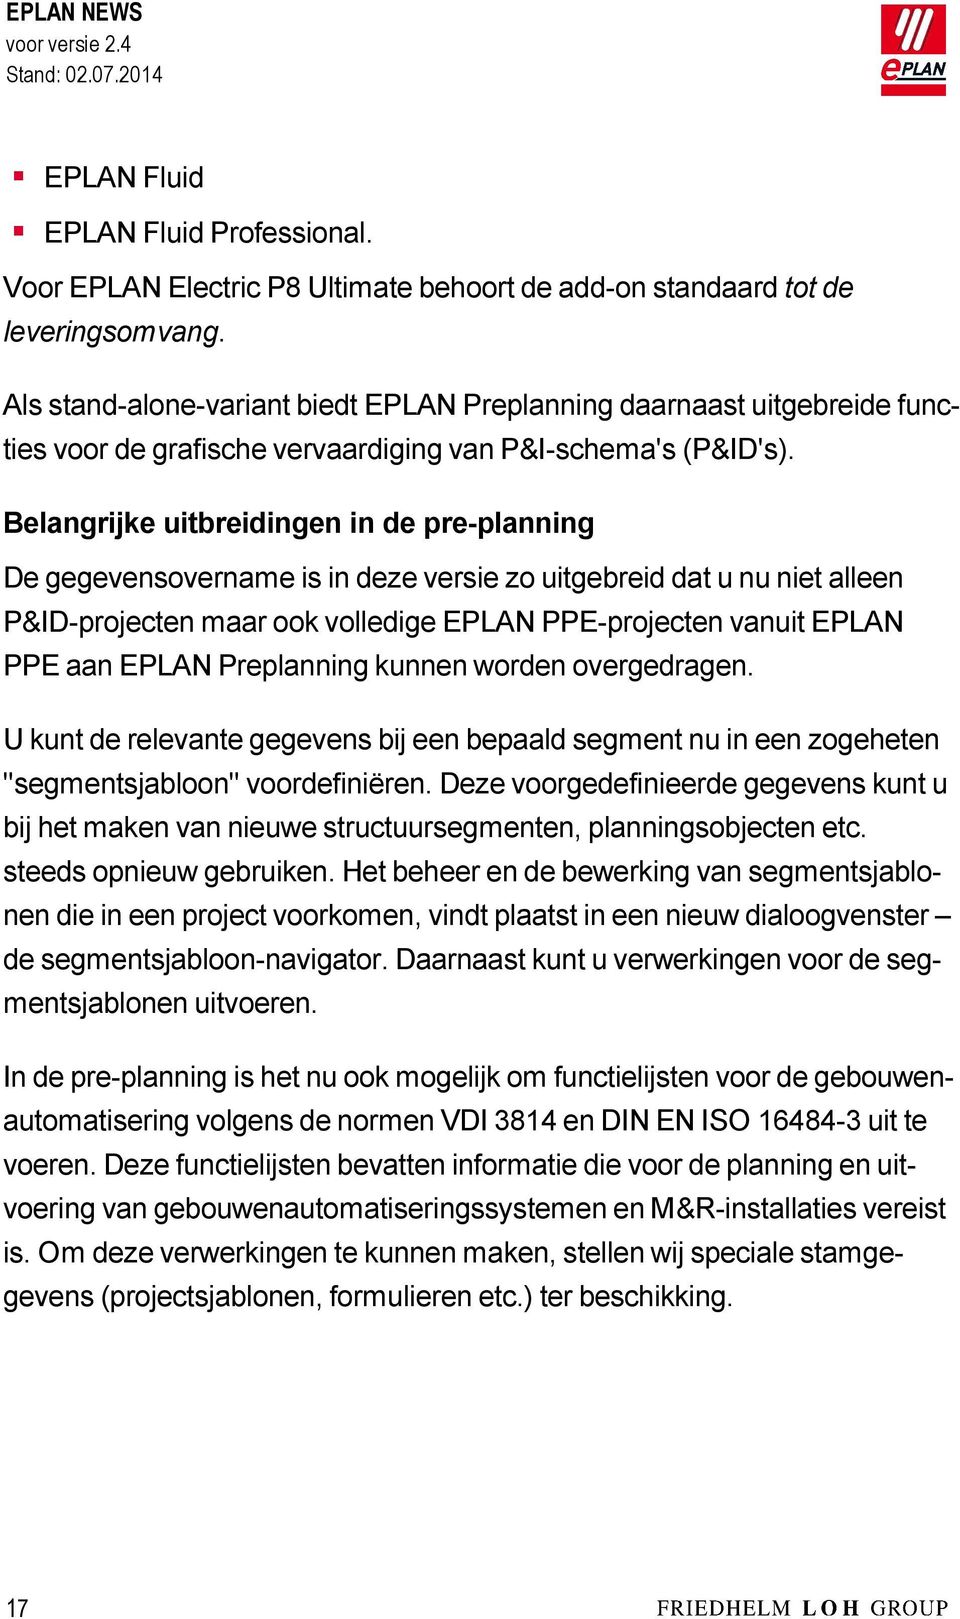 Belangrijke uitbreidingen in de pre-planning De gegevensovername is in deze versie zo uitgebreid dat u nu niet alleen P&ID-projecten maar ook volledige EPLAN PPE-projecten vanuit EPLAN PPE aan EPLAN